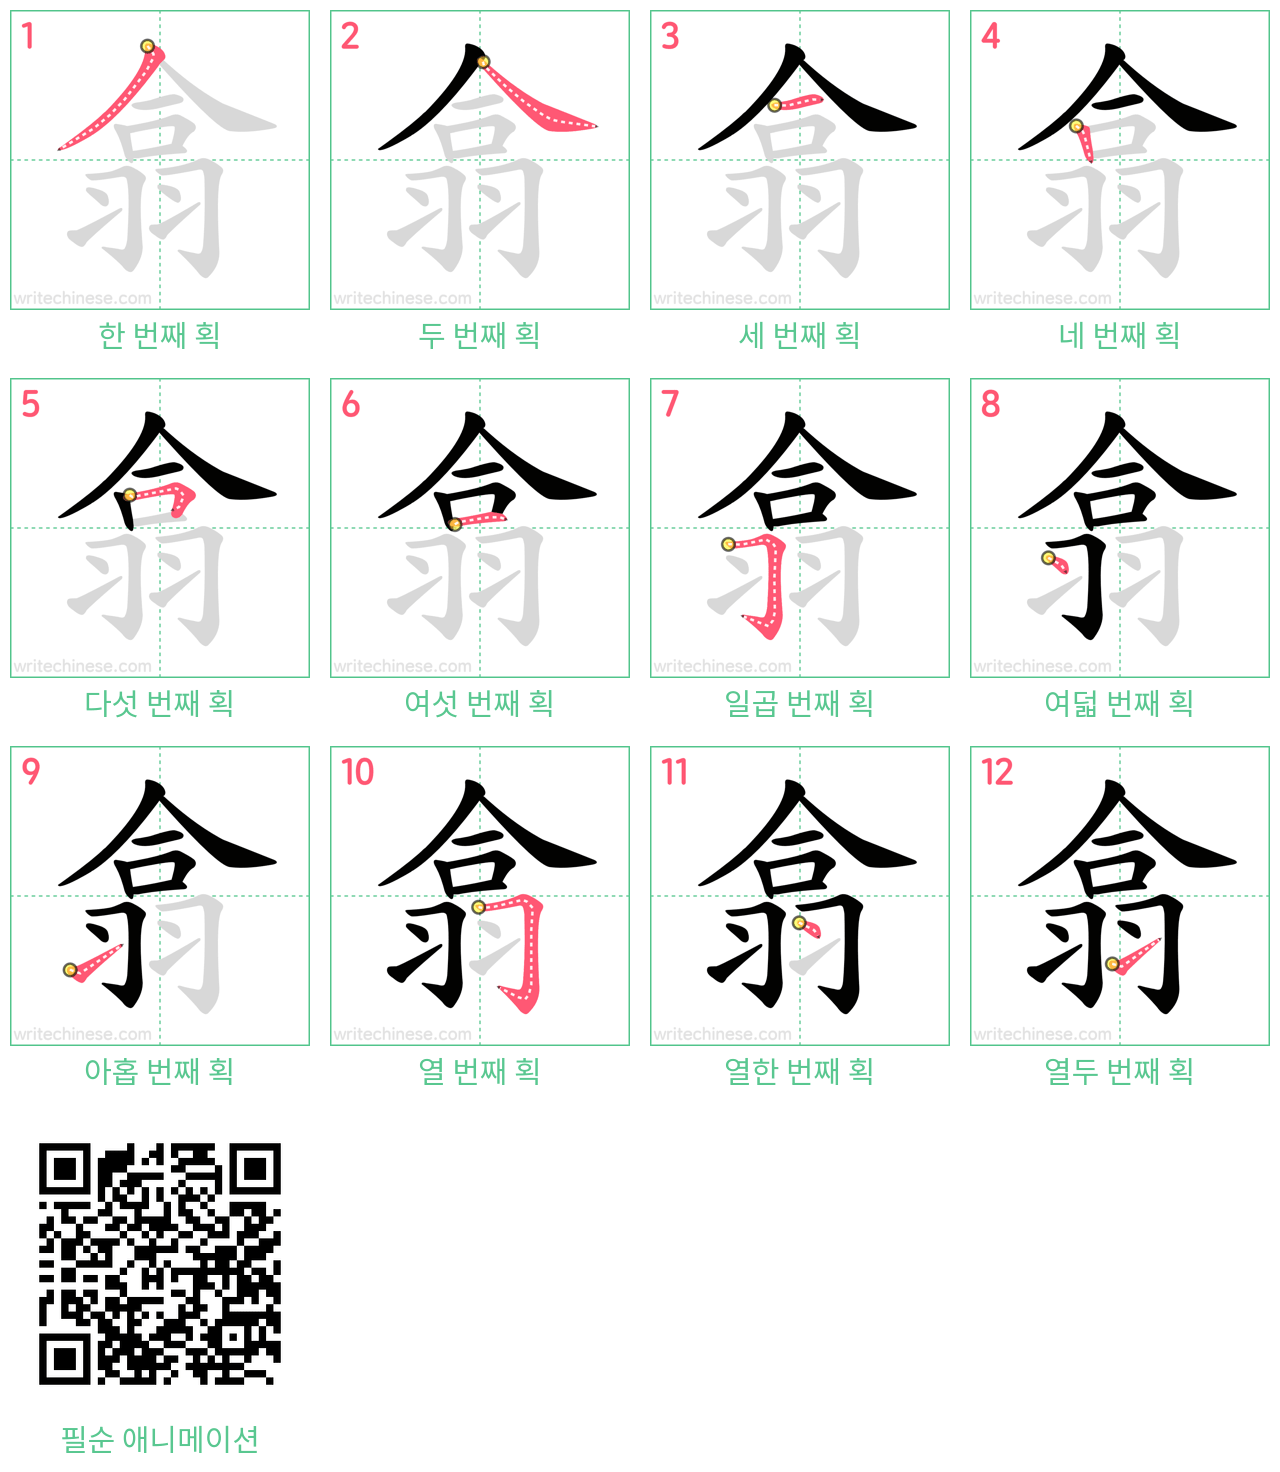 翕 step-by-step stroke order diagrams